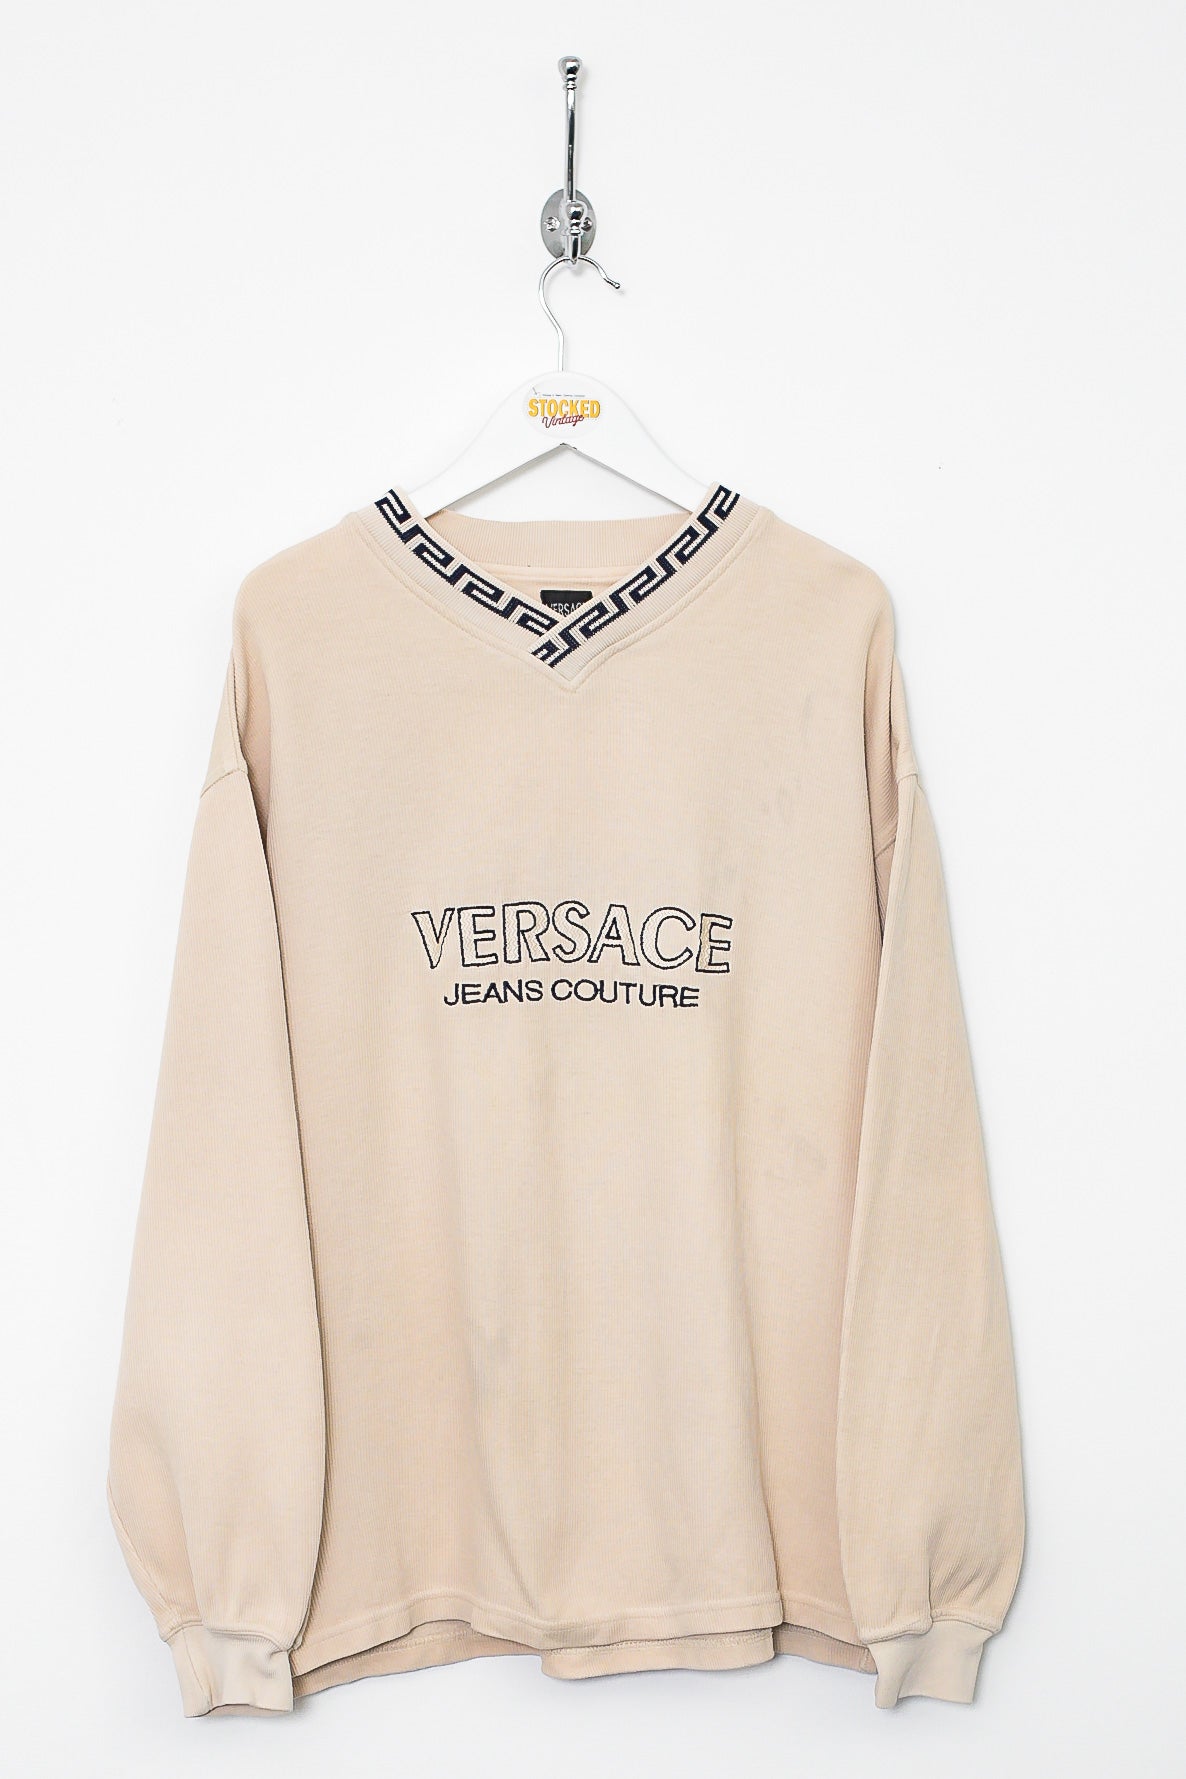 Bootleg Versace Sweatshirt (M)